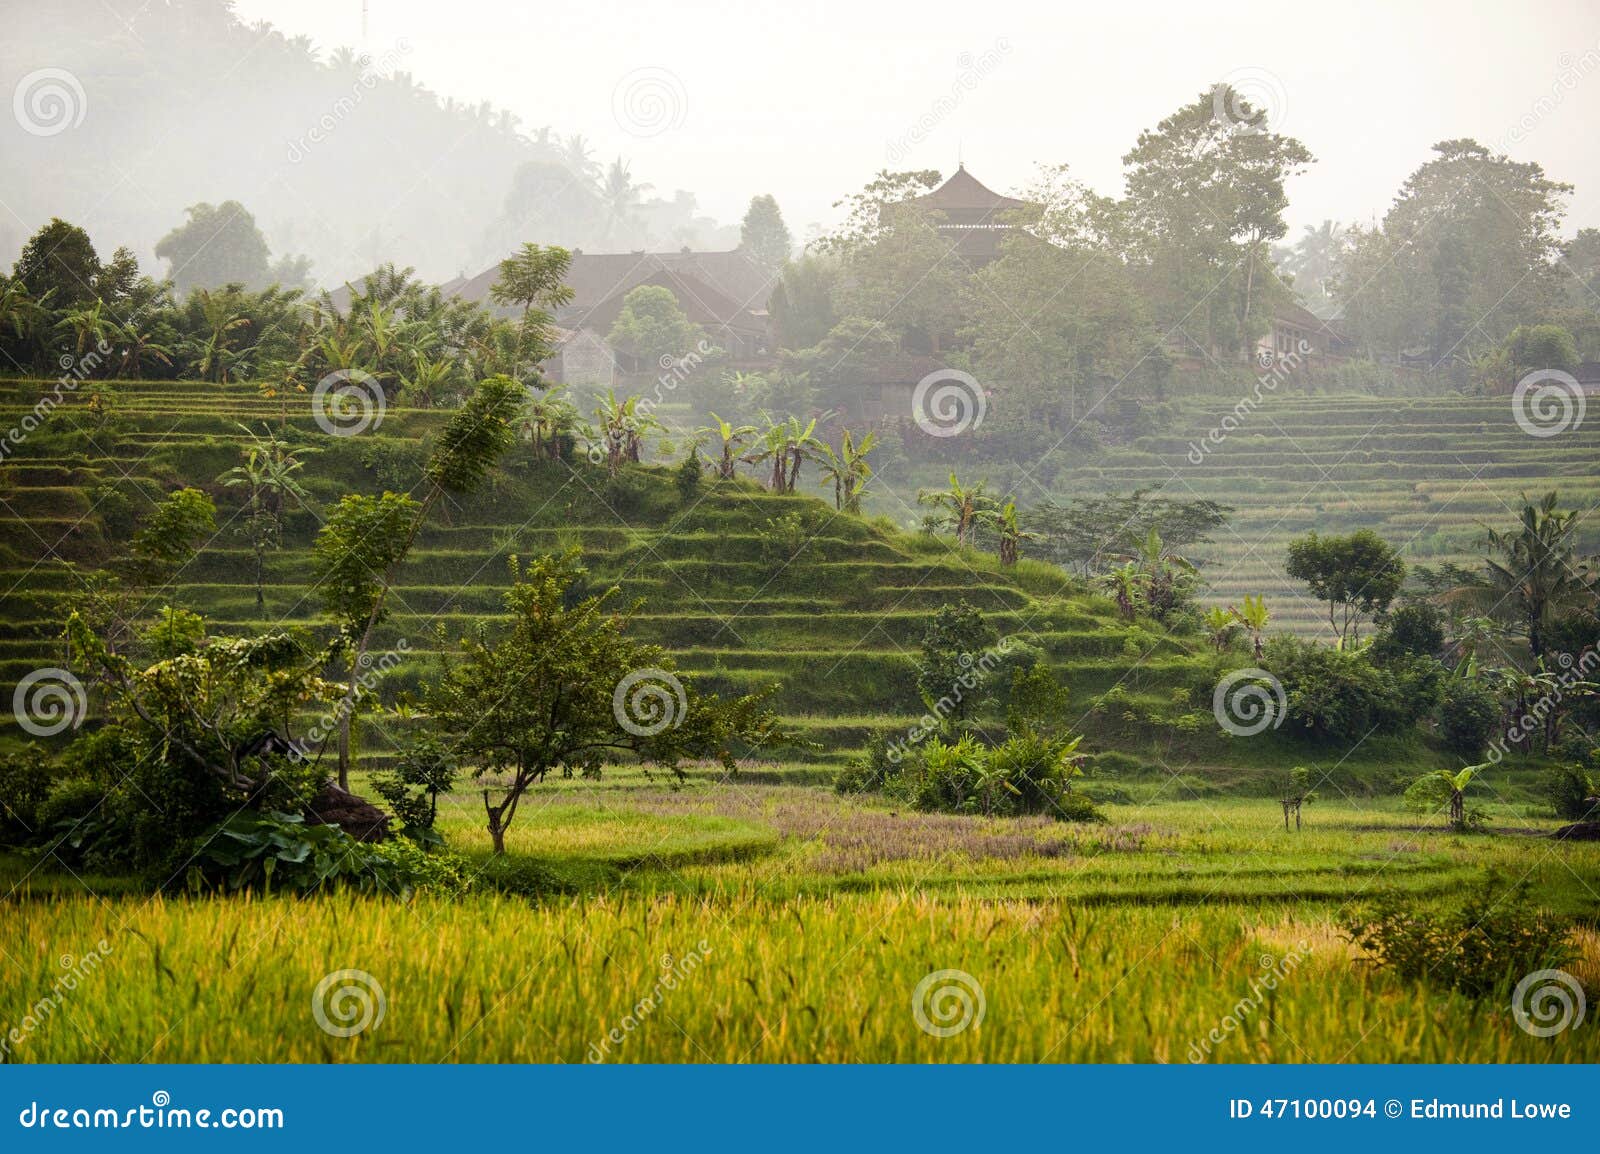 Поля риса Бали. В восточной части Бали, Индонезия около деревни Sidemen вы можете увидеть некоторые из самых красивых и самых драматических террас риса в Азии Мирное место близко к природе